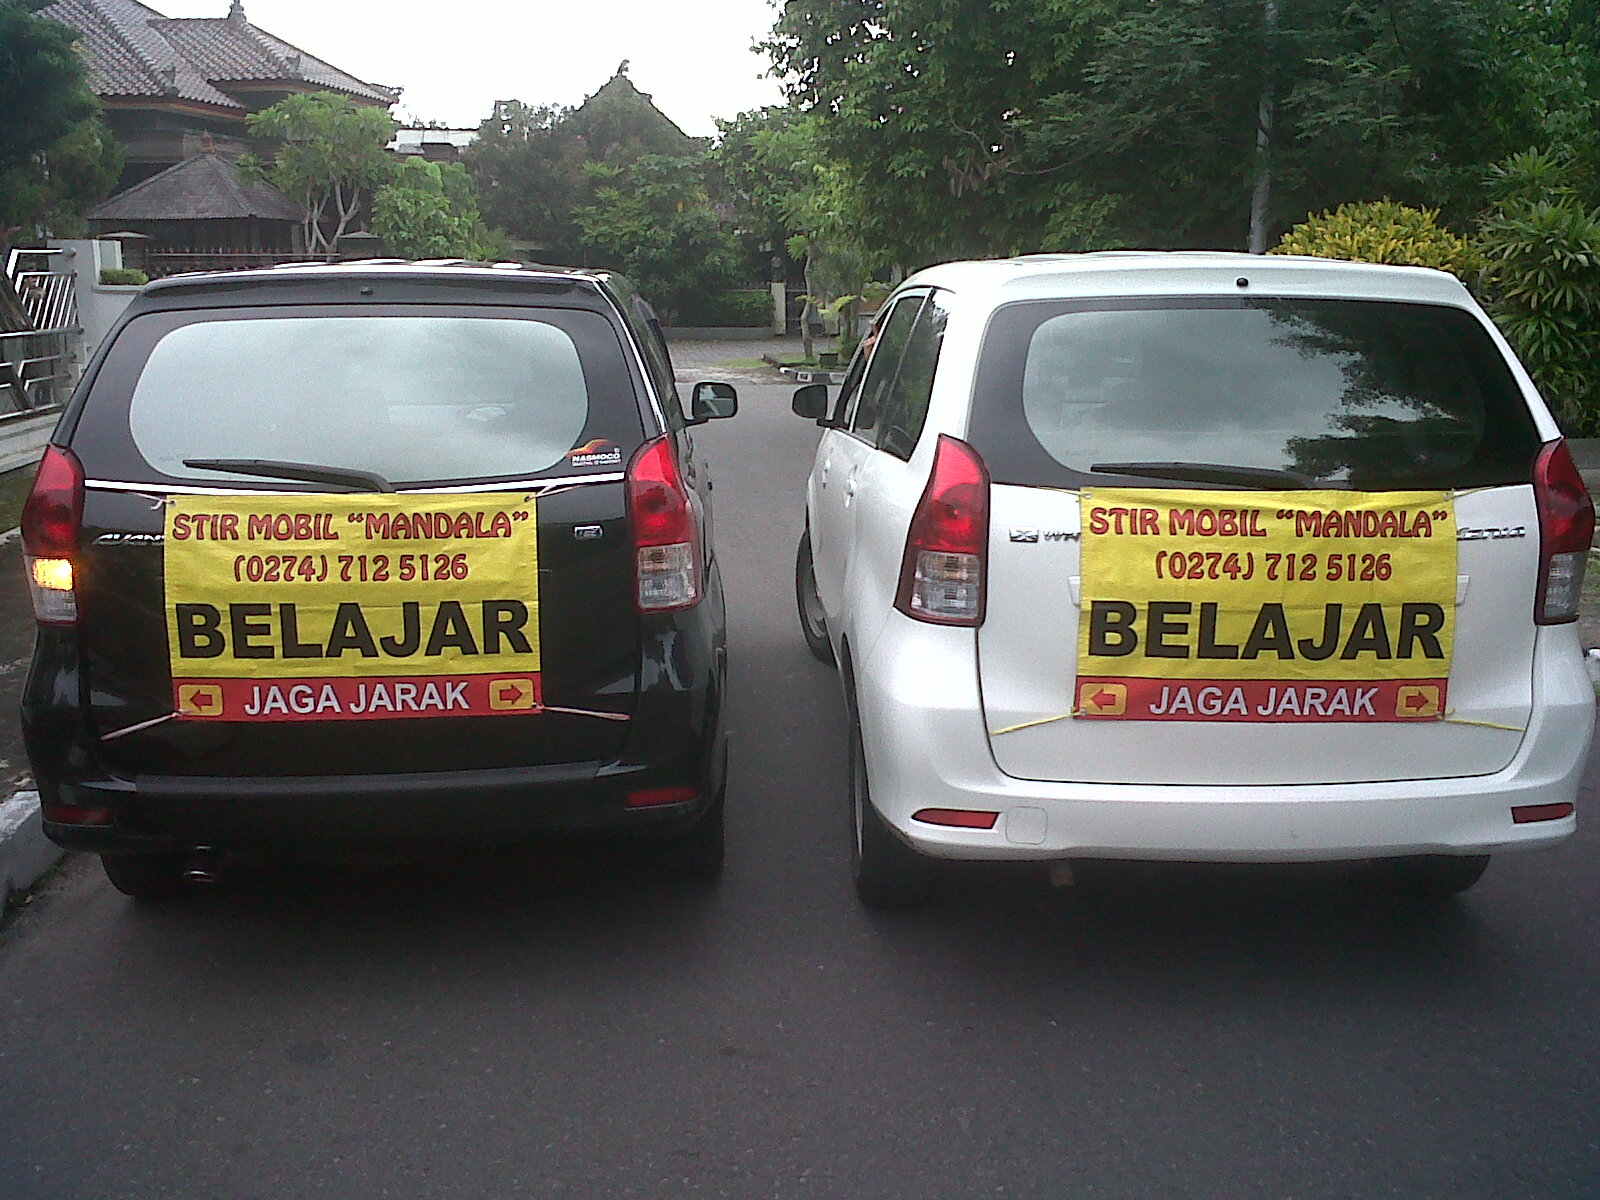 Kursus Mengemudi Mobil Koesdjijah Surabaya Gambar Foto Terbaru